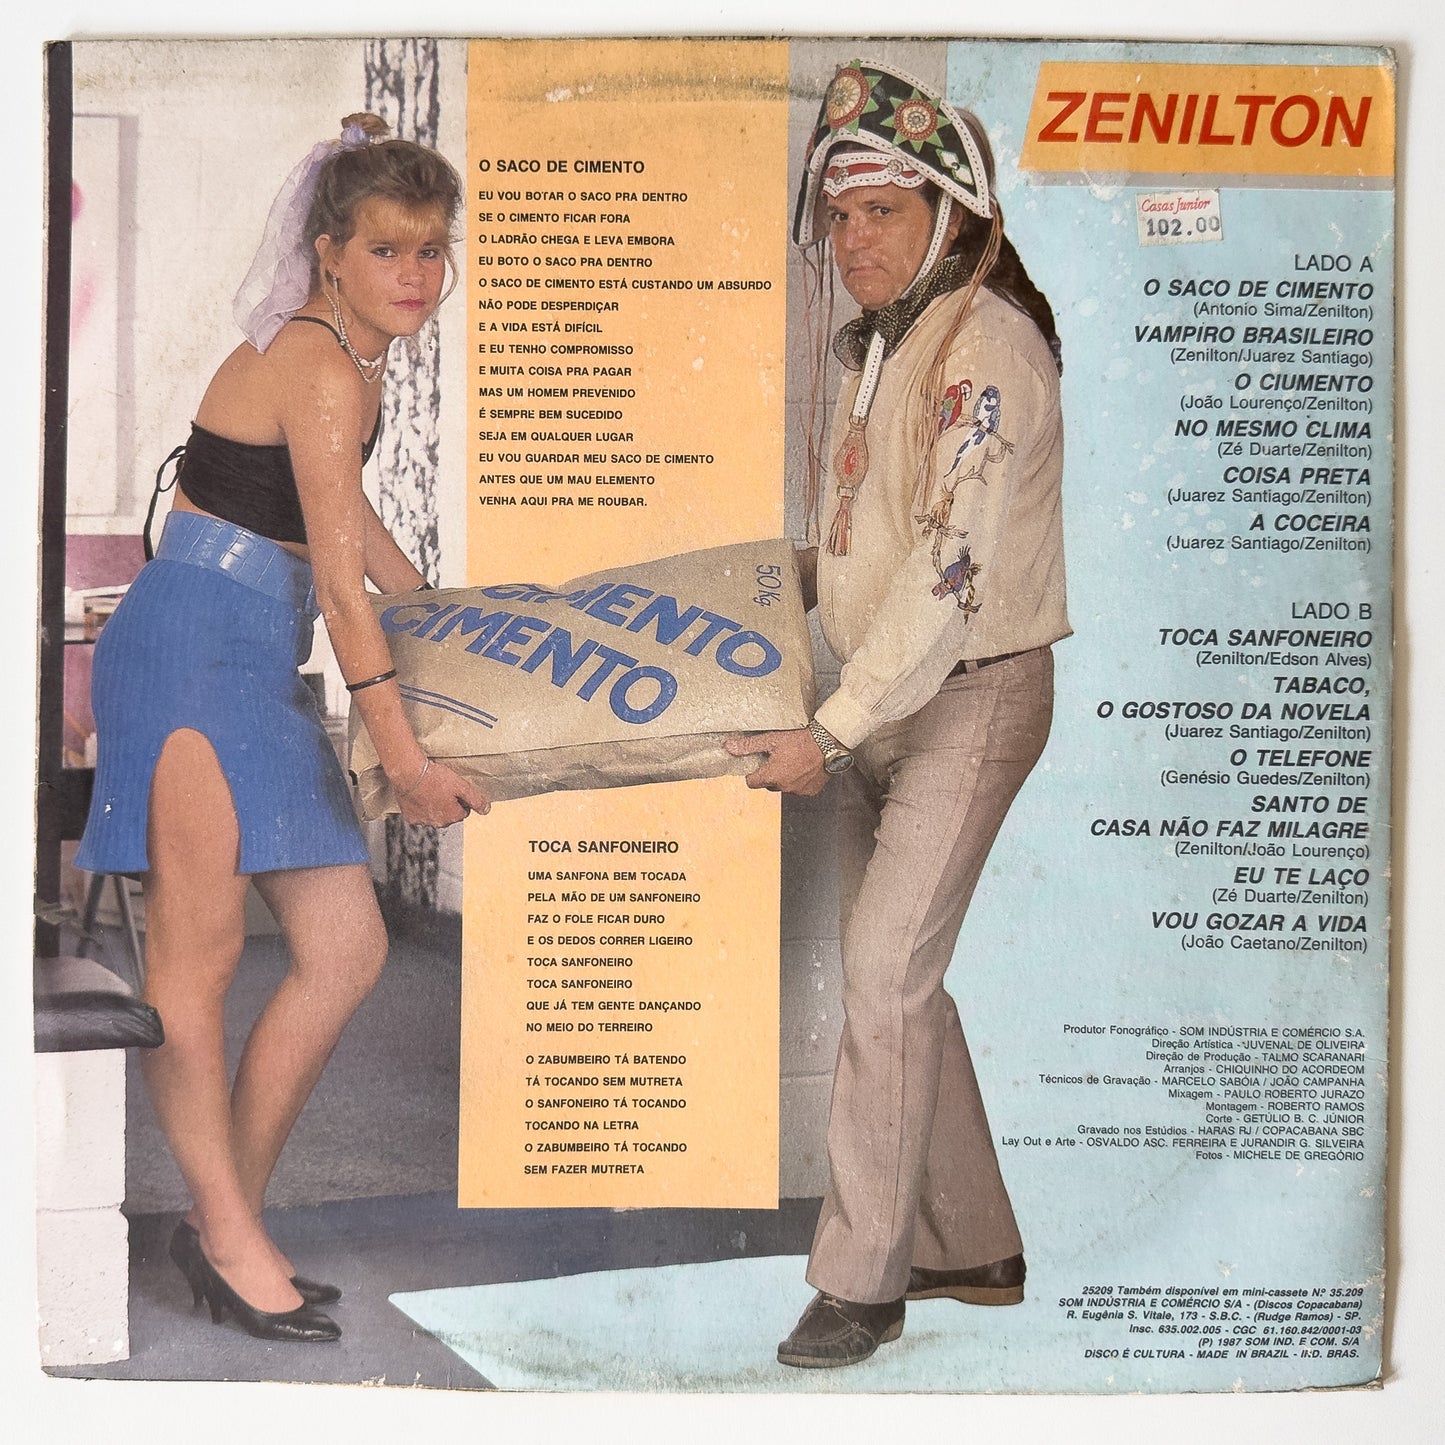 Zenilton - Eu Vou Botar O Saco Prá Dentro (LP)